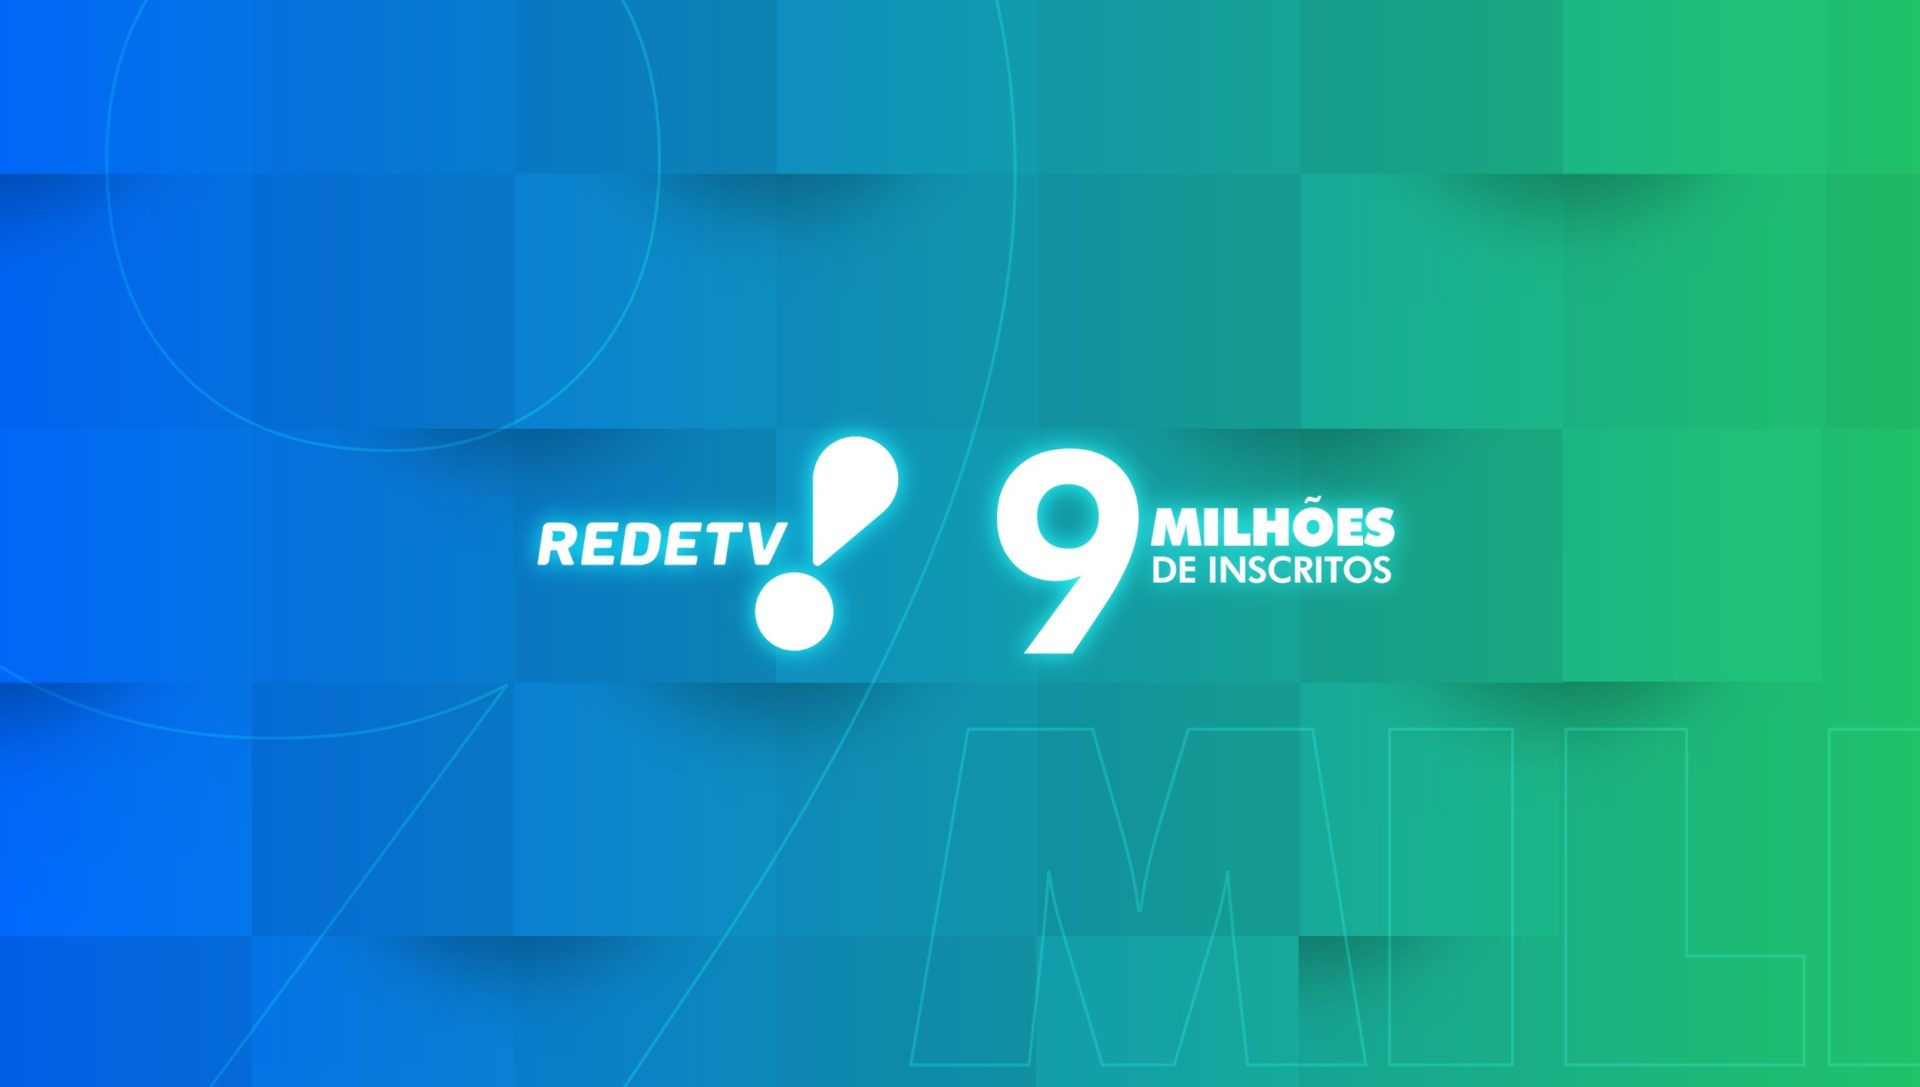 RedeTV! alcança 9 milhões de inscritos no Youtube